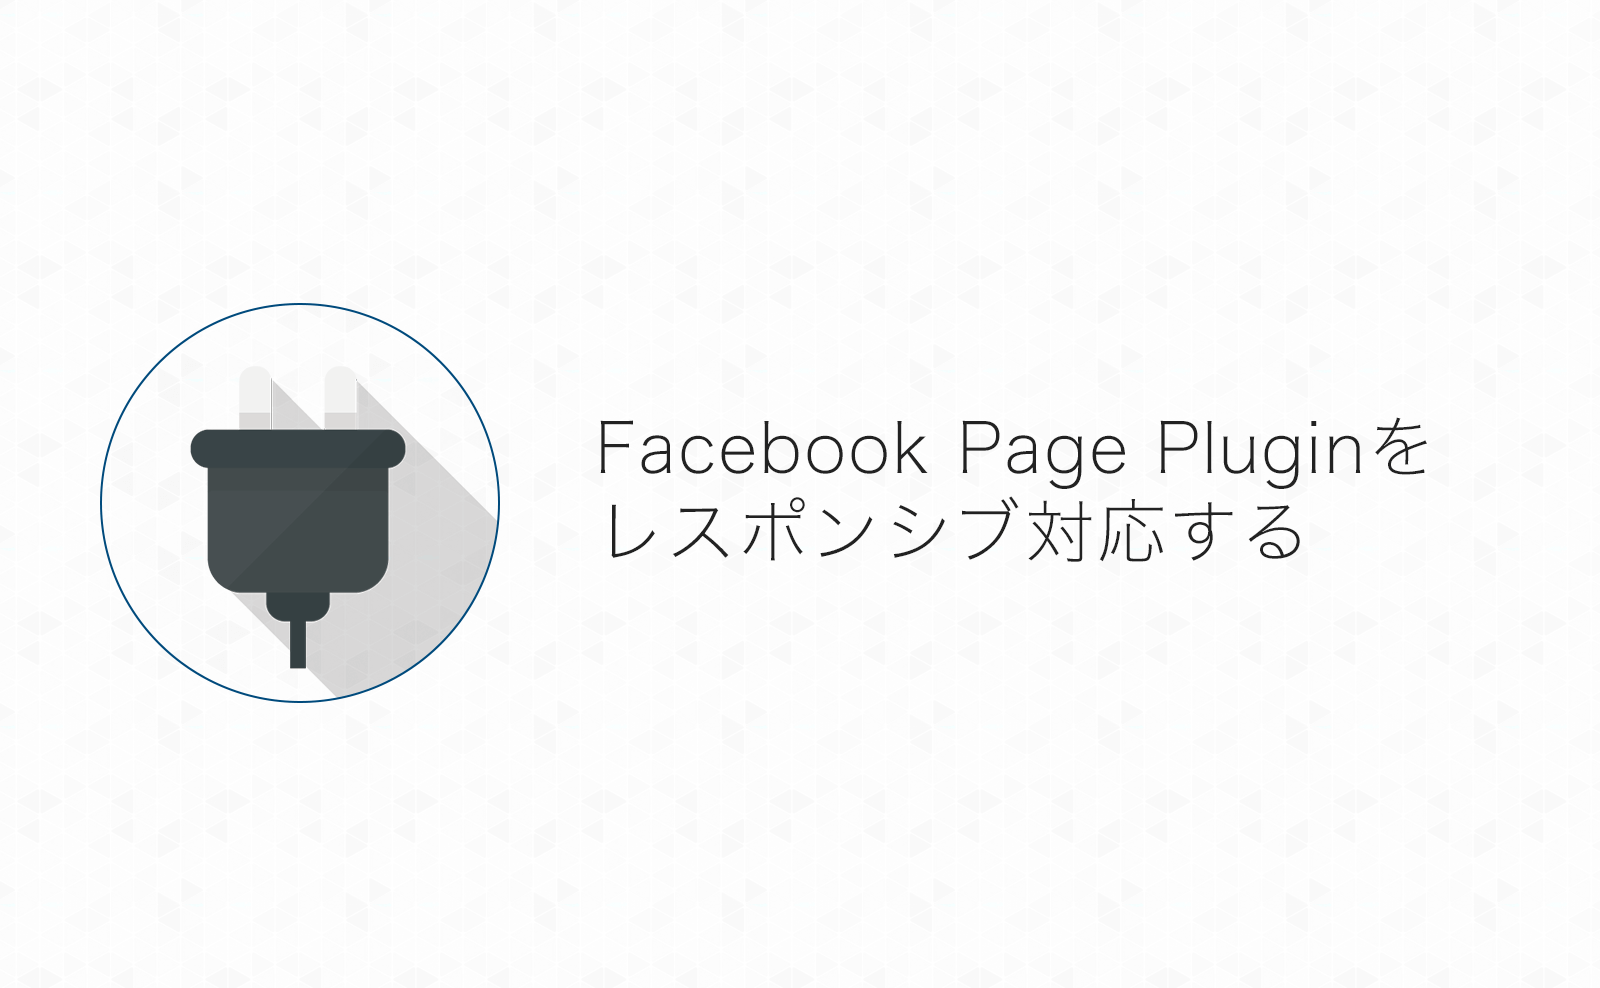 Facebookページの投稿をサイトに表示する「Page Plugin」を完全レスポンシブ対応する方法